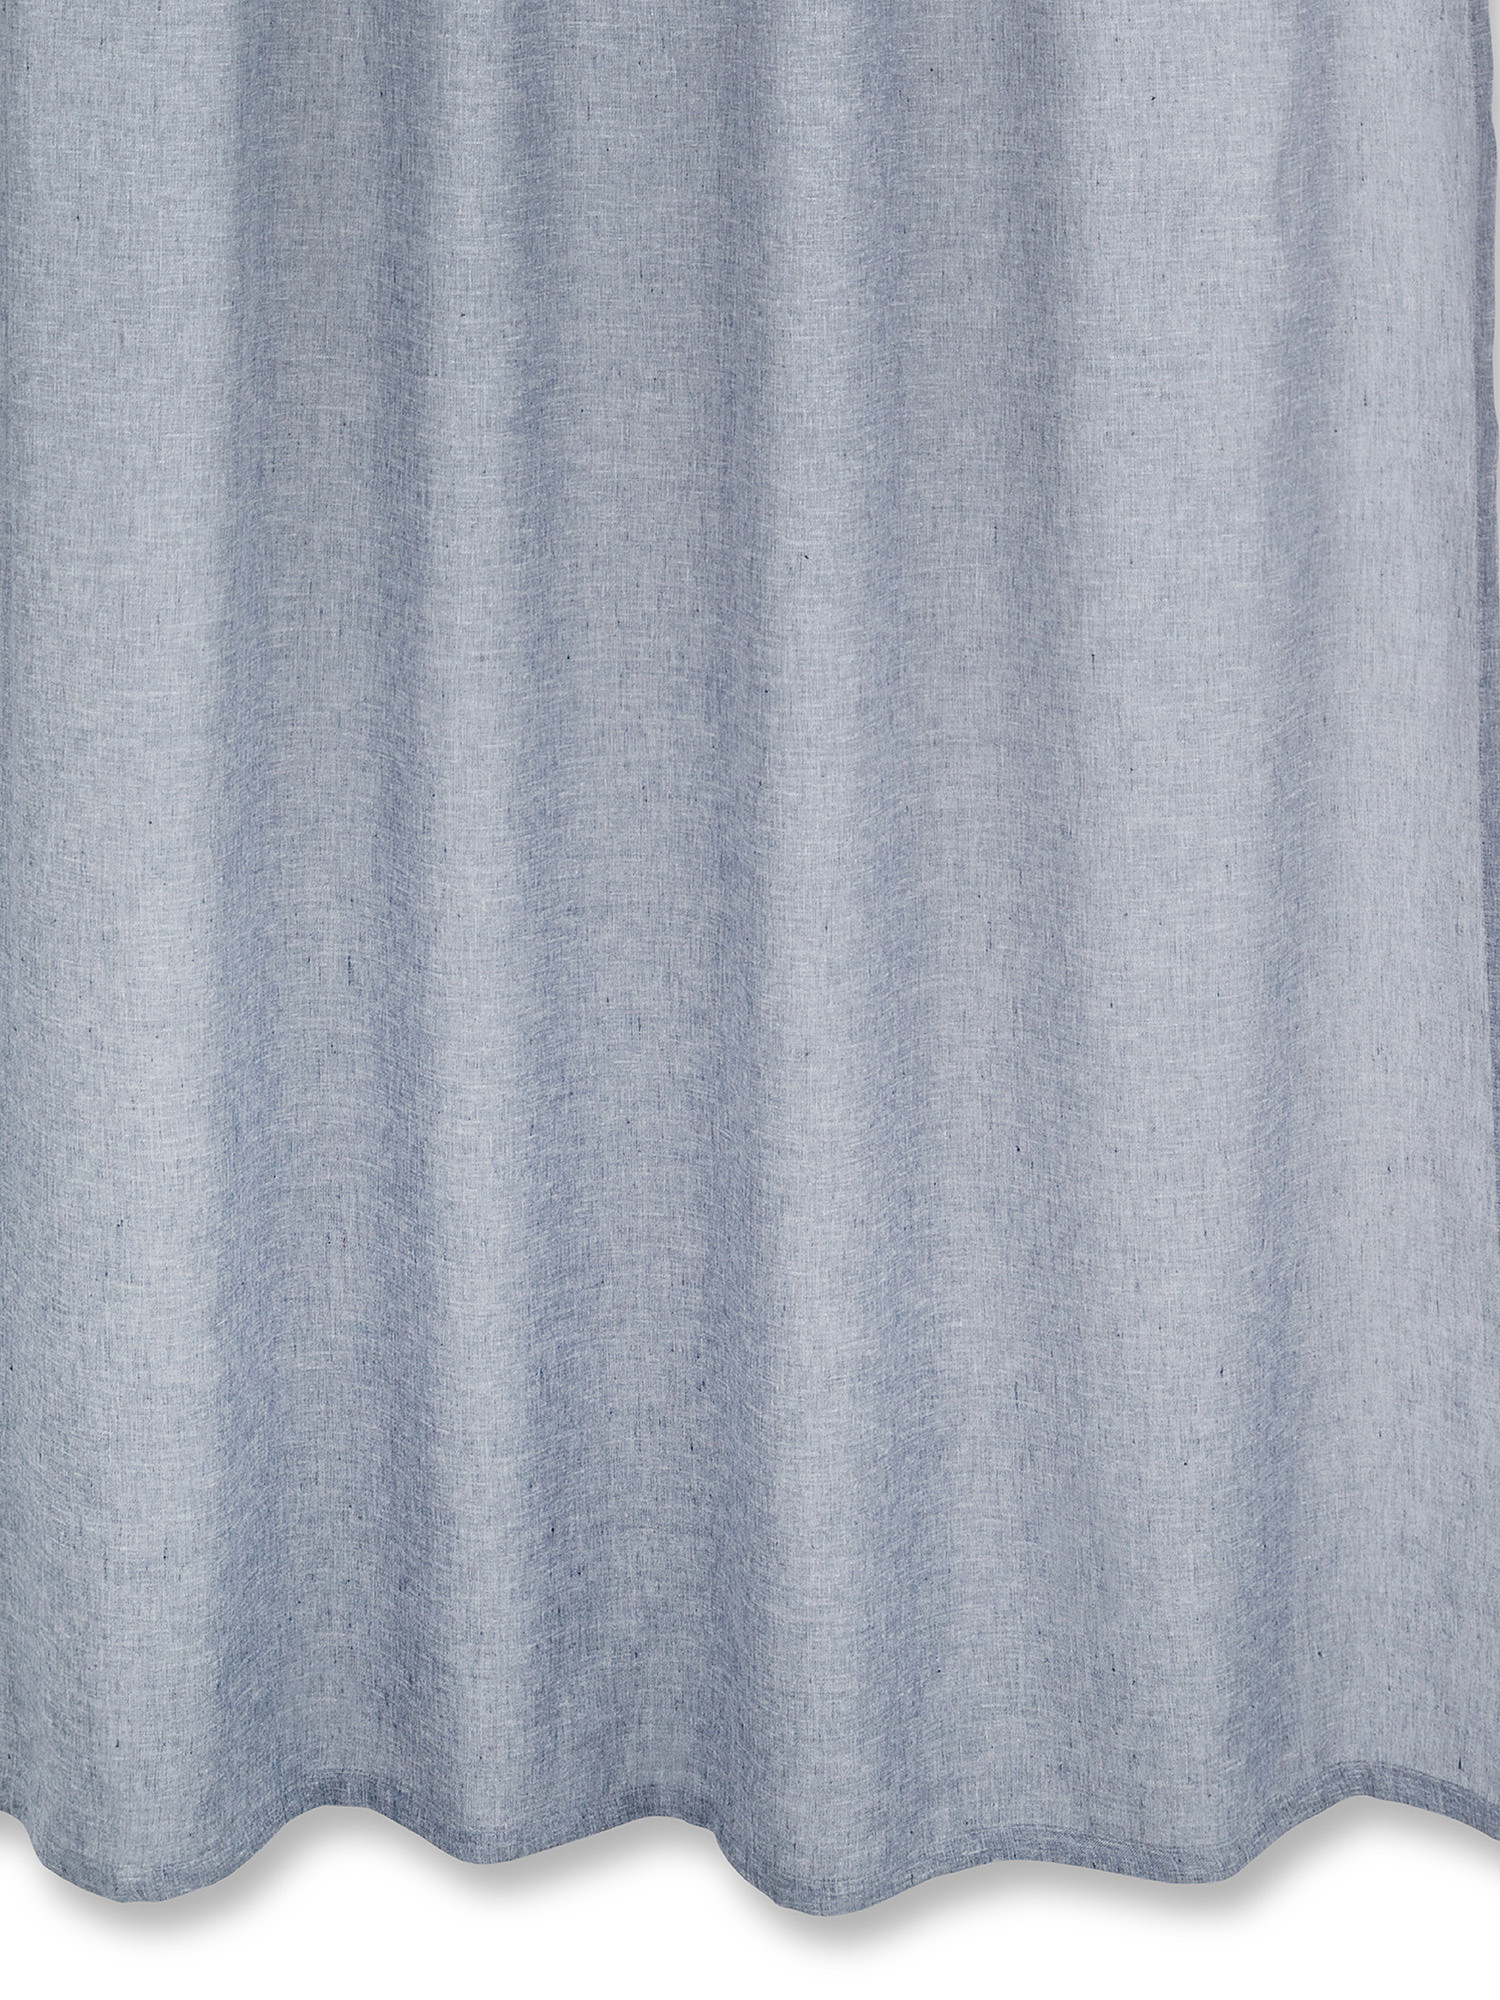 Solid color washed effect linen blend curtain, Blue, large image number 0